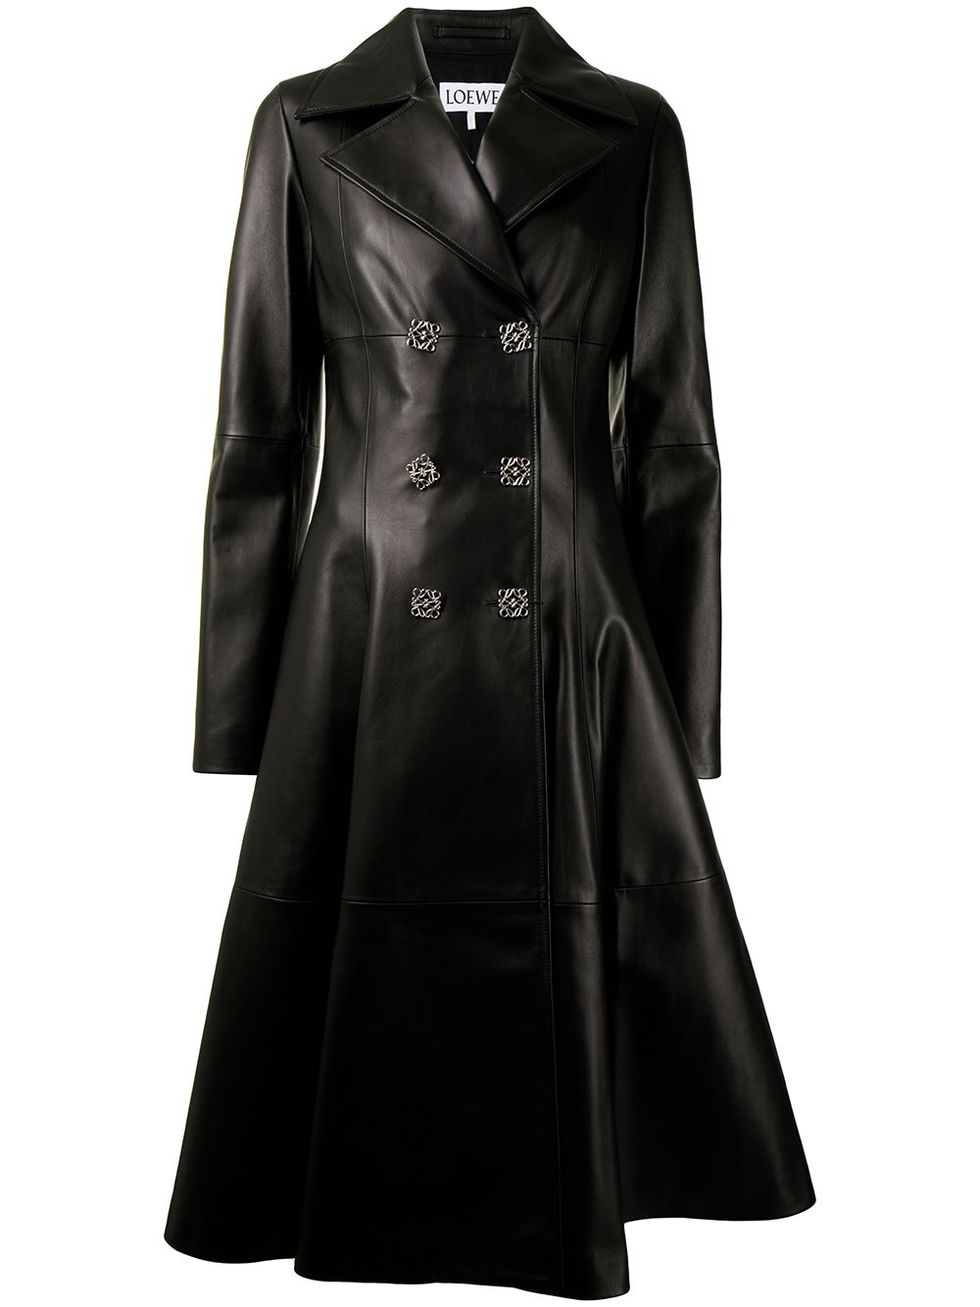 《駭客任務》穿搭單品推薦：Loewe雙排扣設計皮革大衣